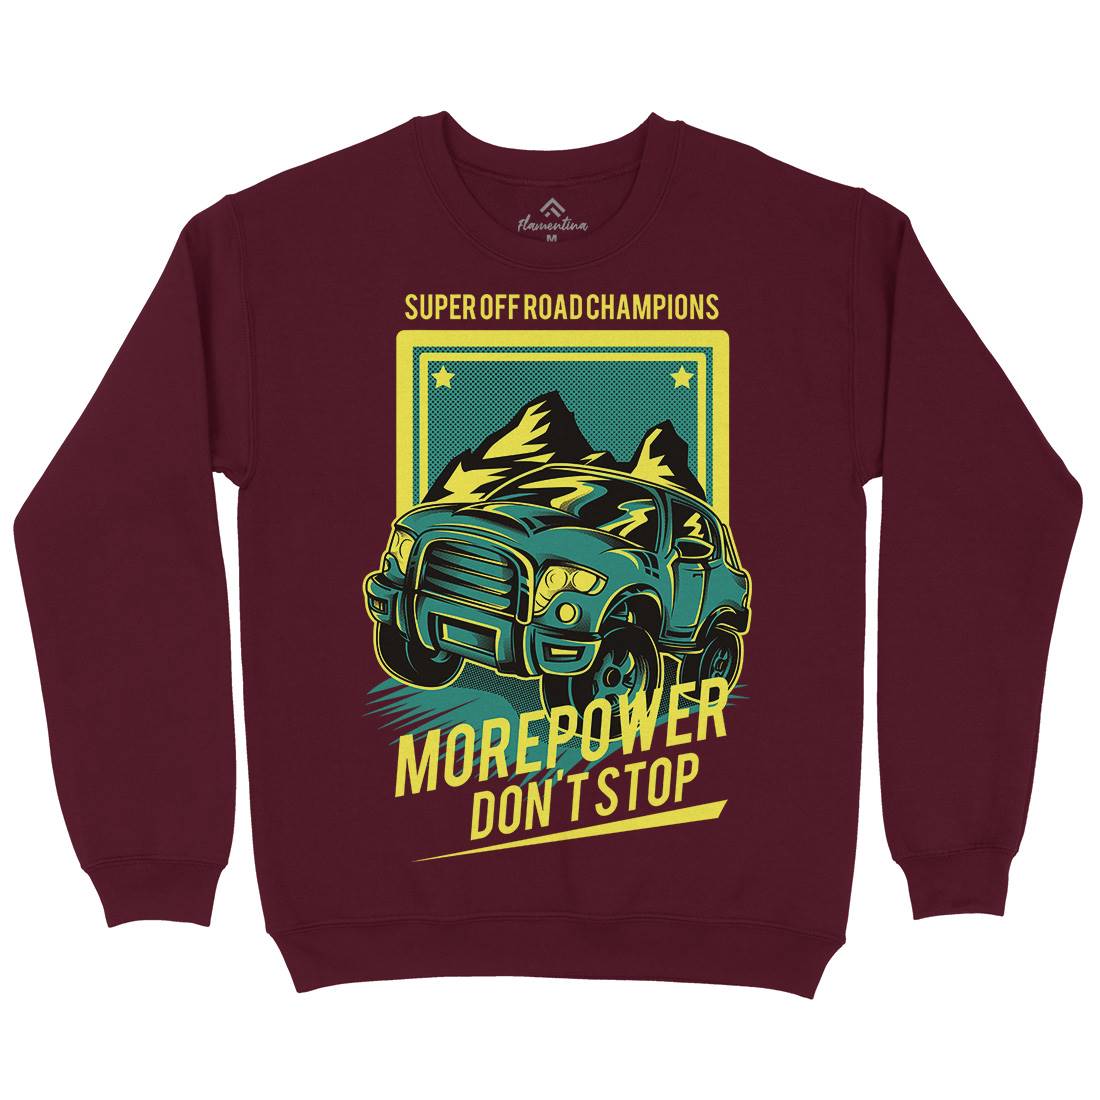 More Power Kids Crew Neck Sweatshirt Cars D657